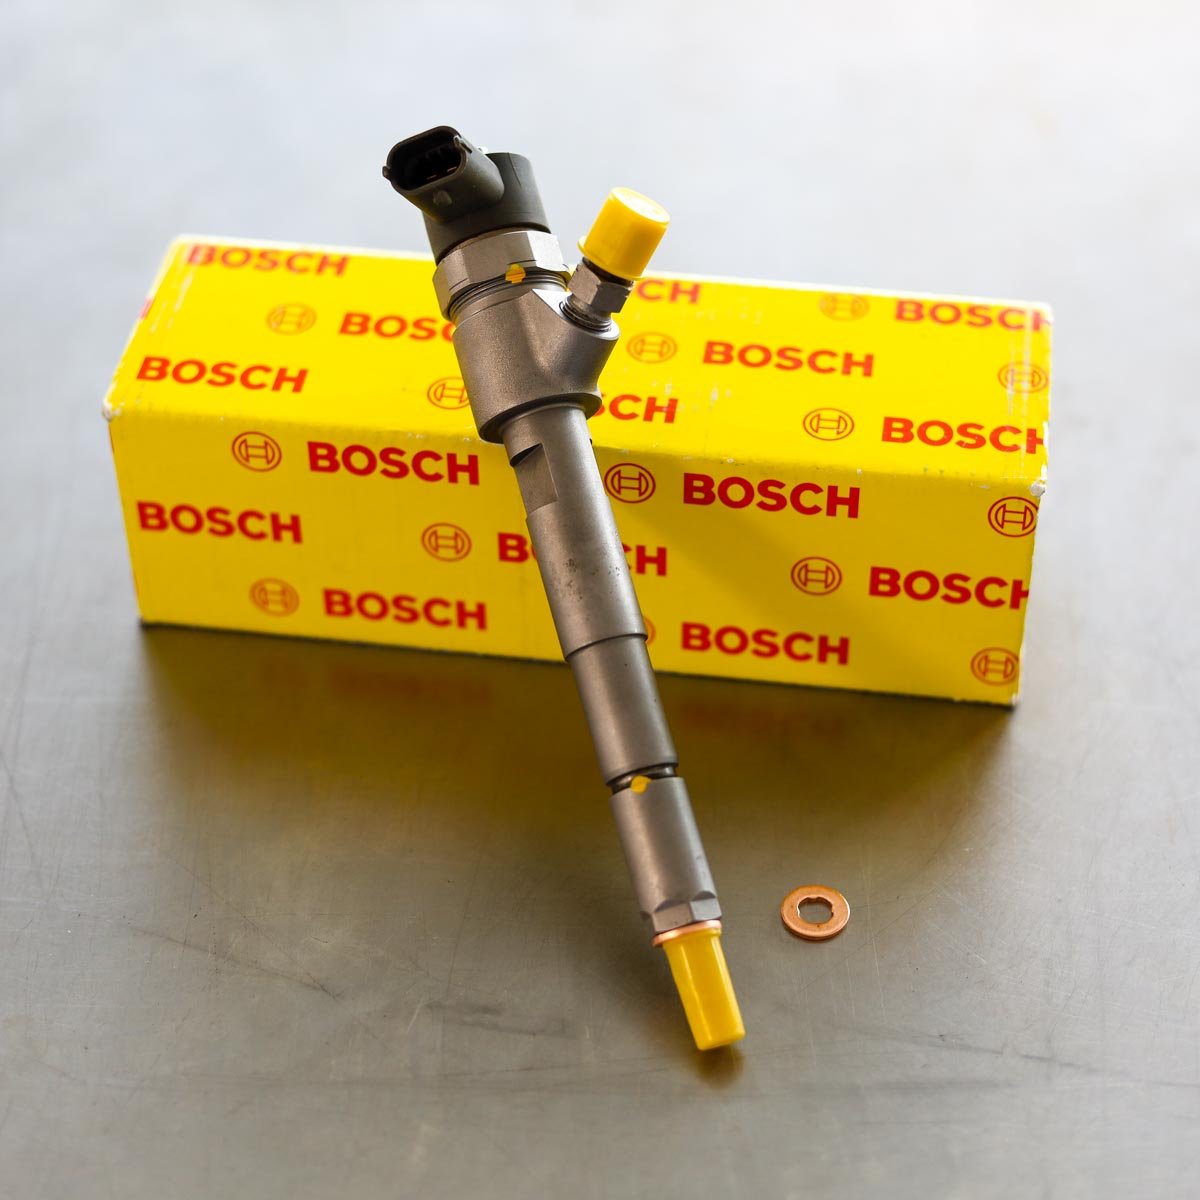 Wtryskiwacz Bosch zregenerowany przygotowany do wysyłki do zamawiającego z gwarancją 24 miesiące w korzystnej cenie